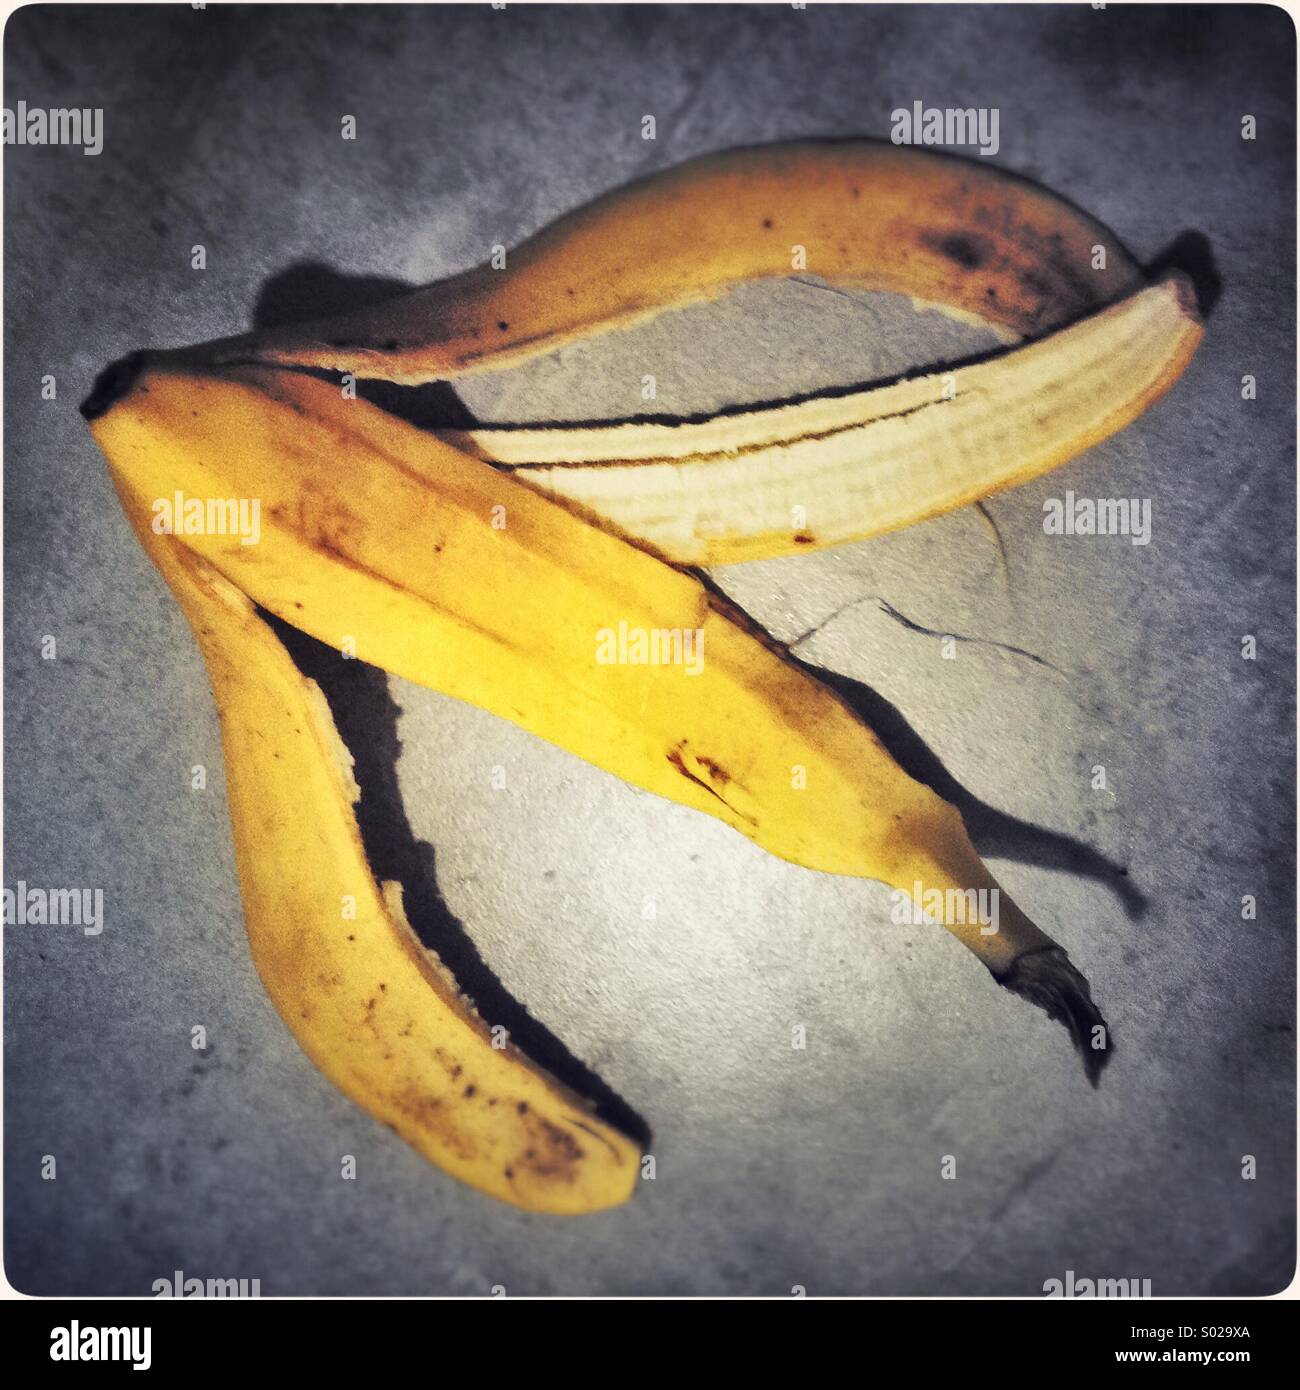 Buccia Di Banana Immagini e Fotos Stock - Alamy